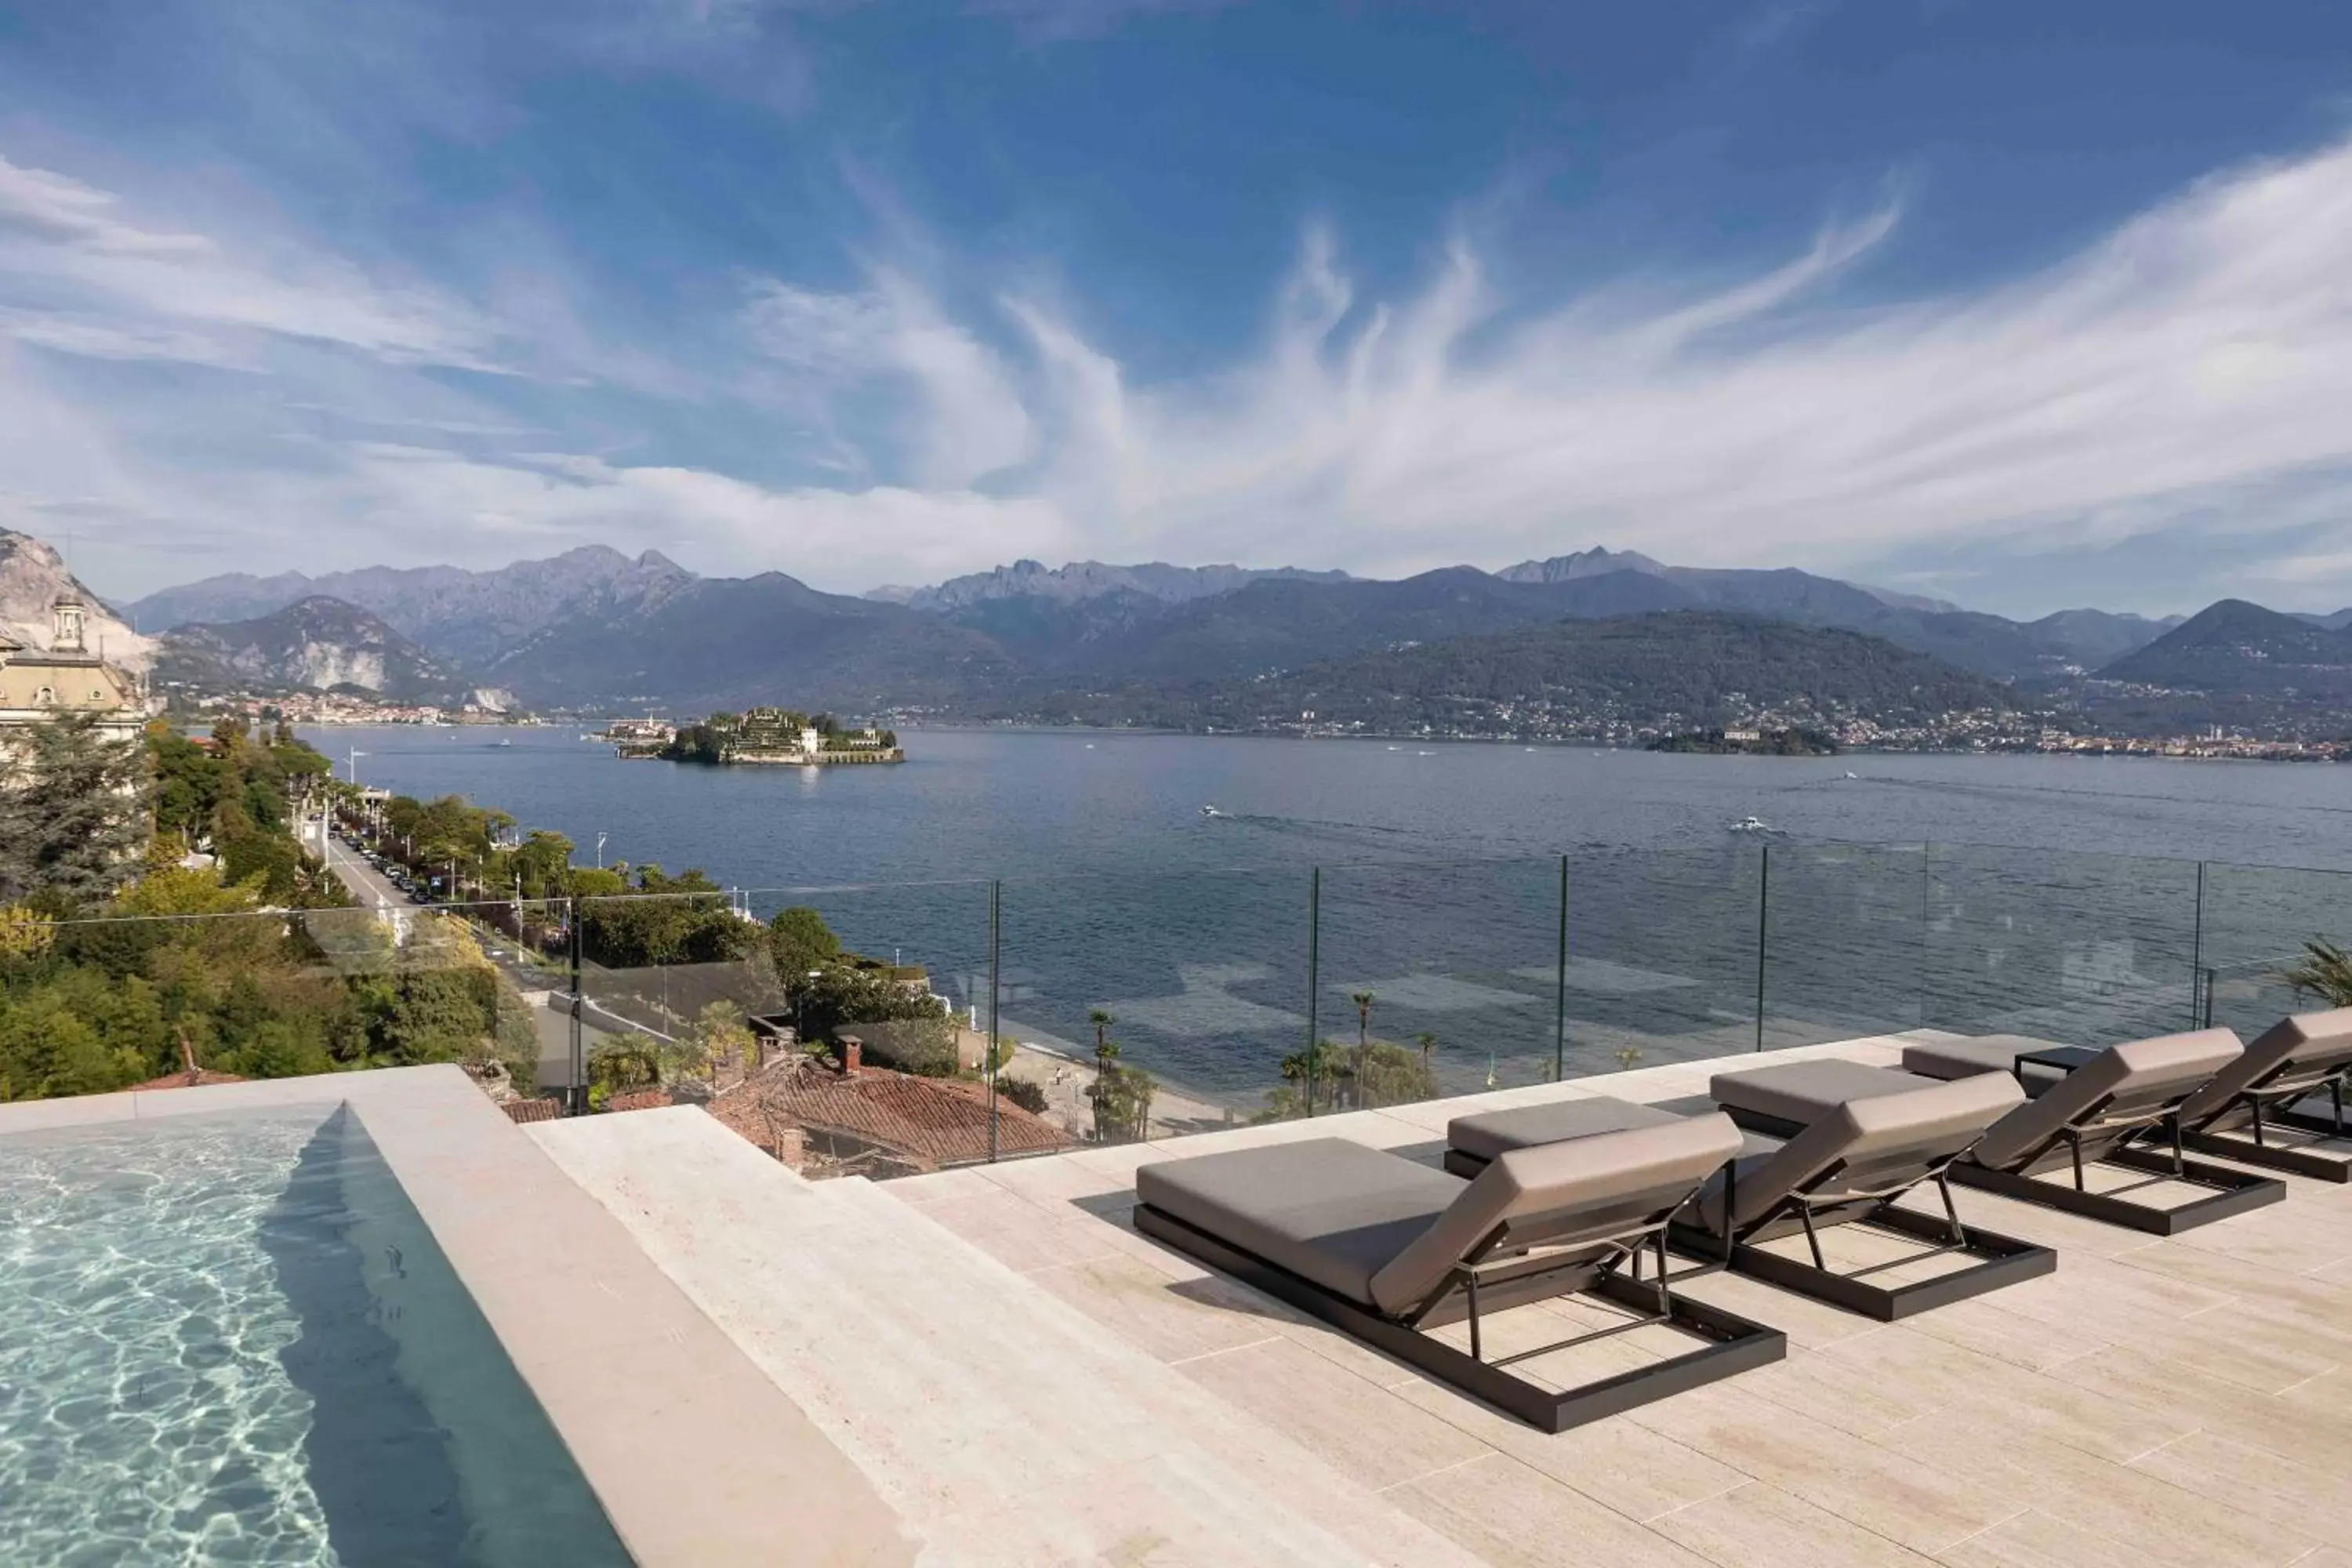 Balcony/Terrace, Swimming Pool in Hotel La Palma